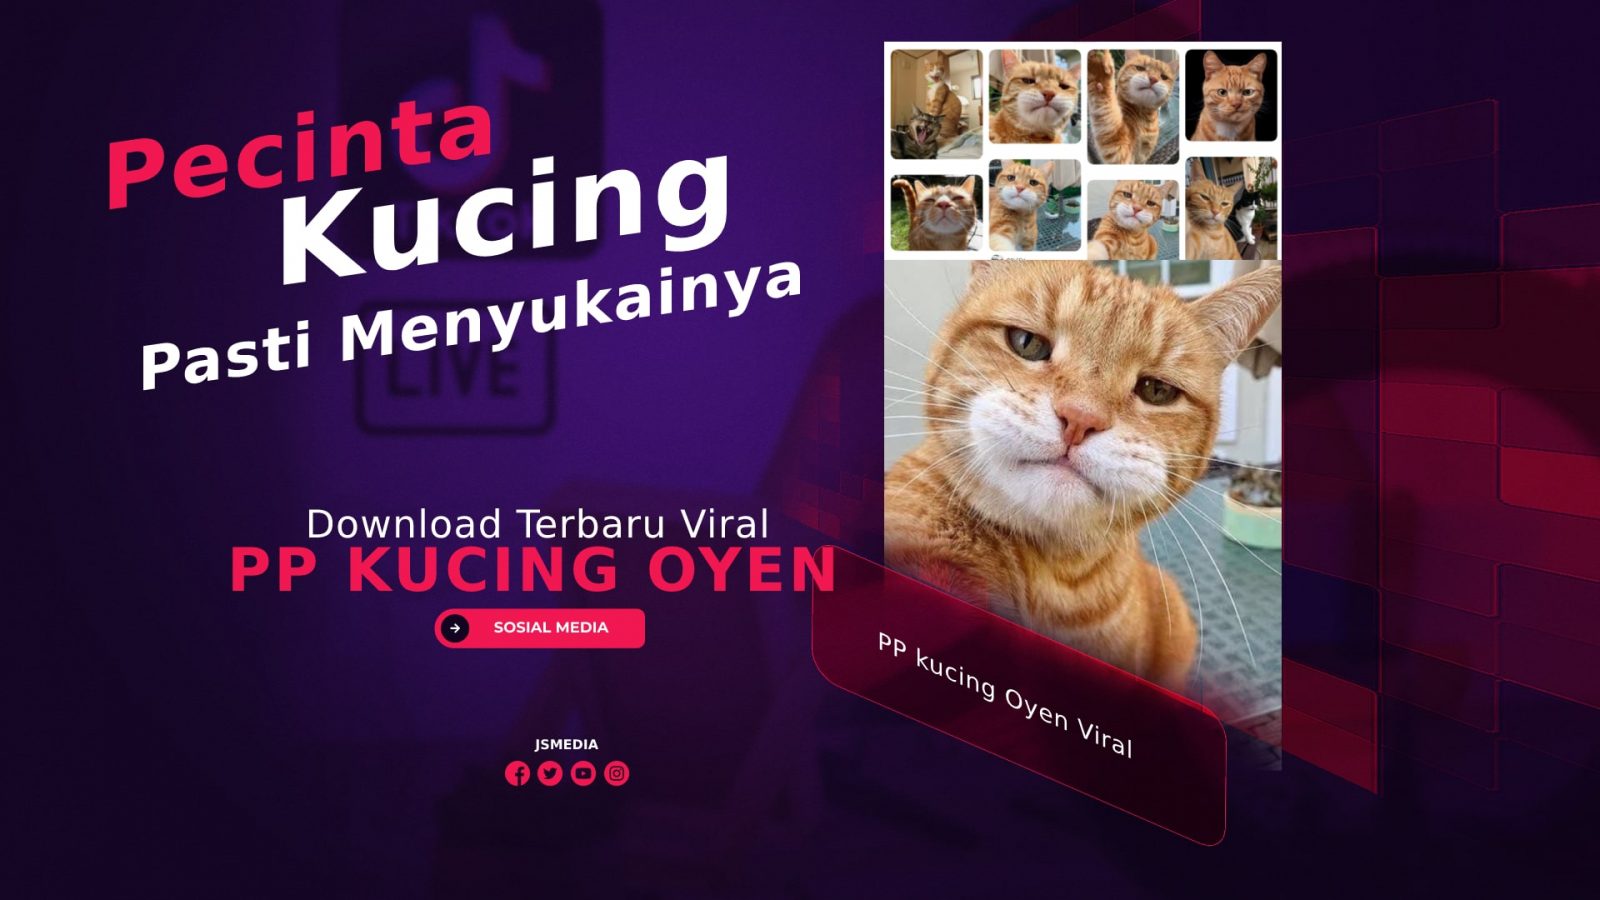 Download PP kucing Oyen Viral, Pecinta Kucing Pasti Suka